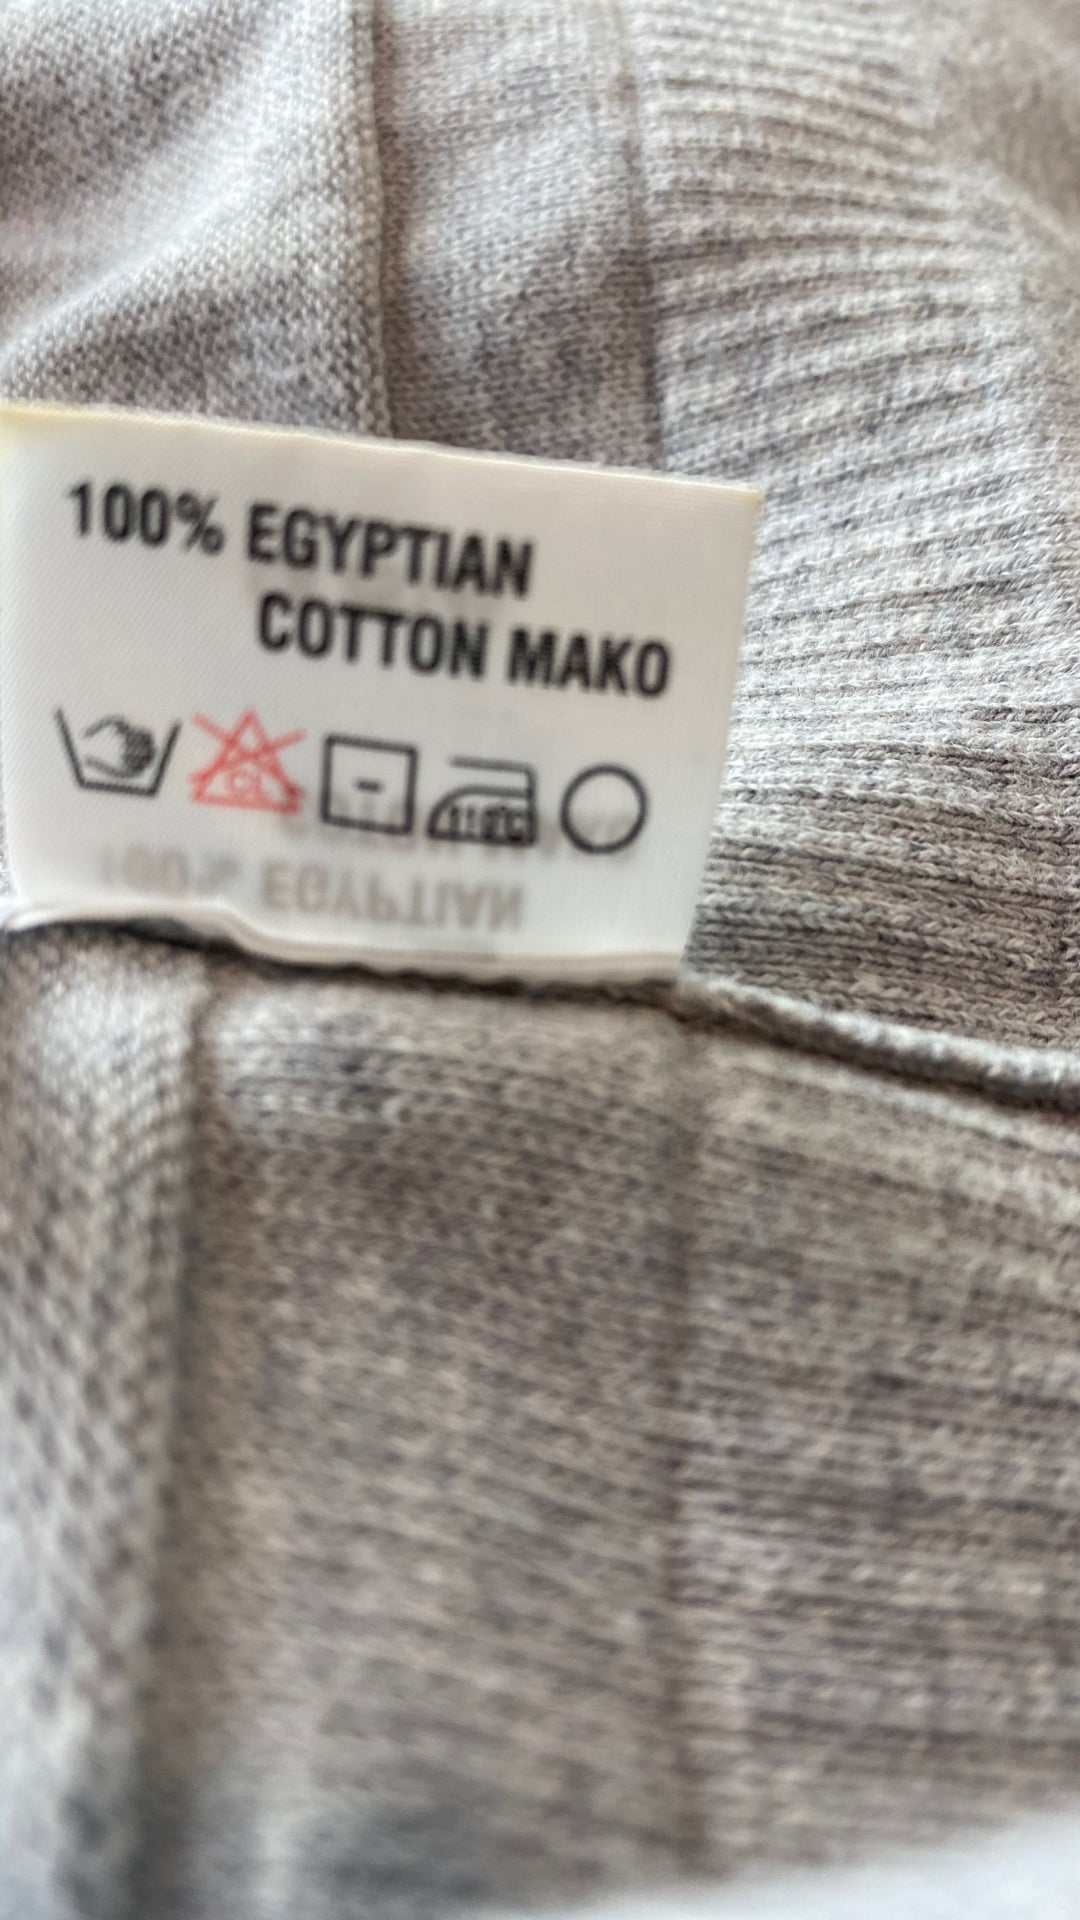 Chandail long tricot gris coton égyptien Ça va de soi, taille medium. Vue de l'étiquette de composition et entretien.